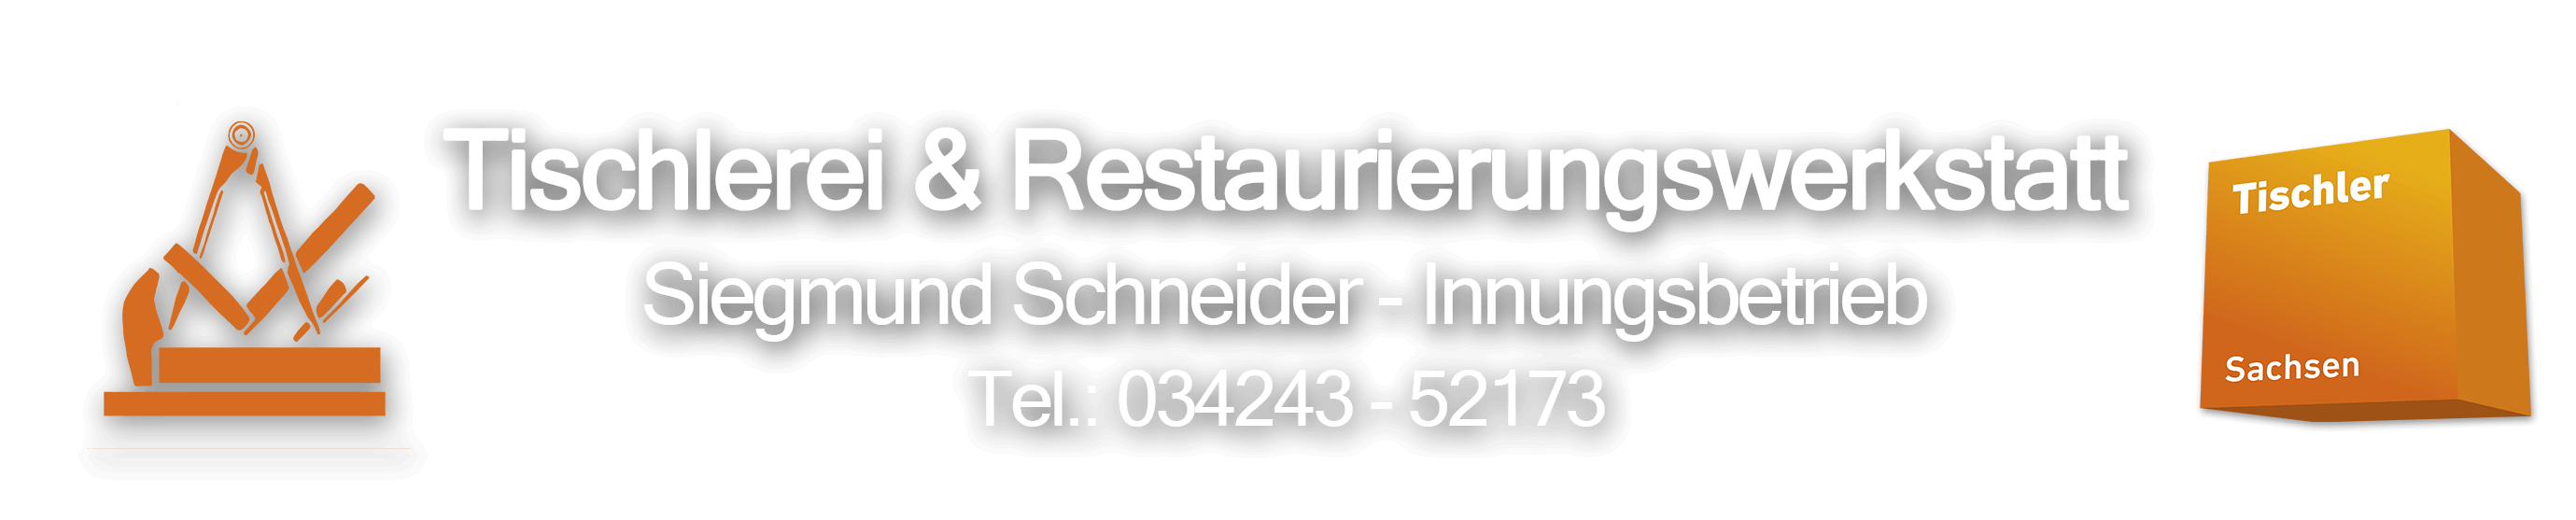 Tischlerei & Restaurierungswerkstatt Siegmund Schneider